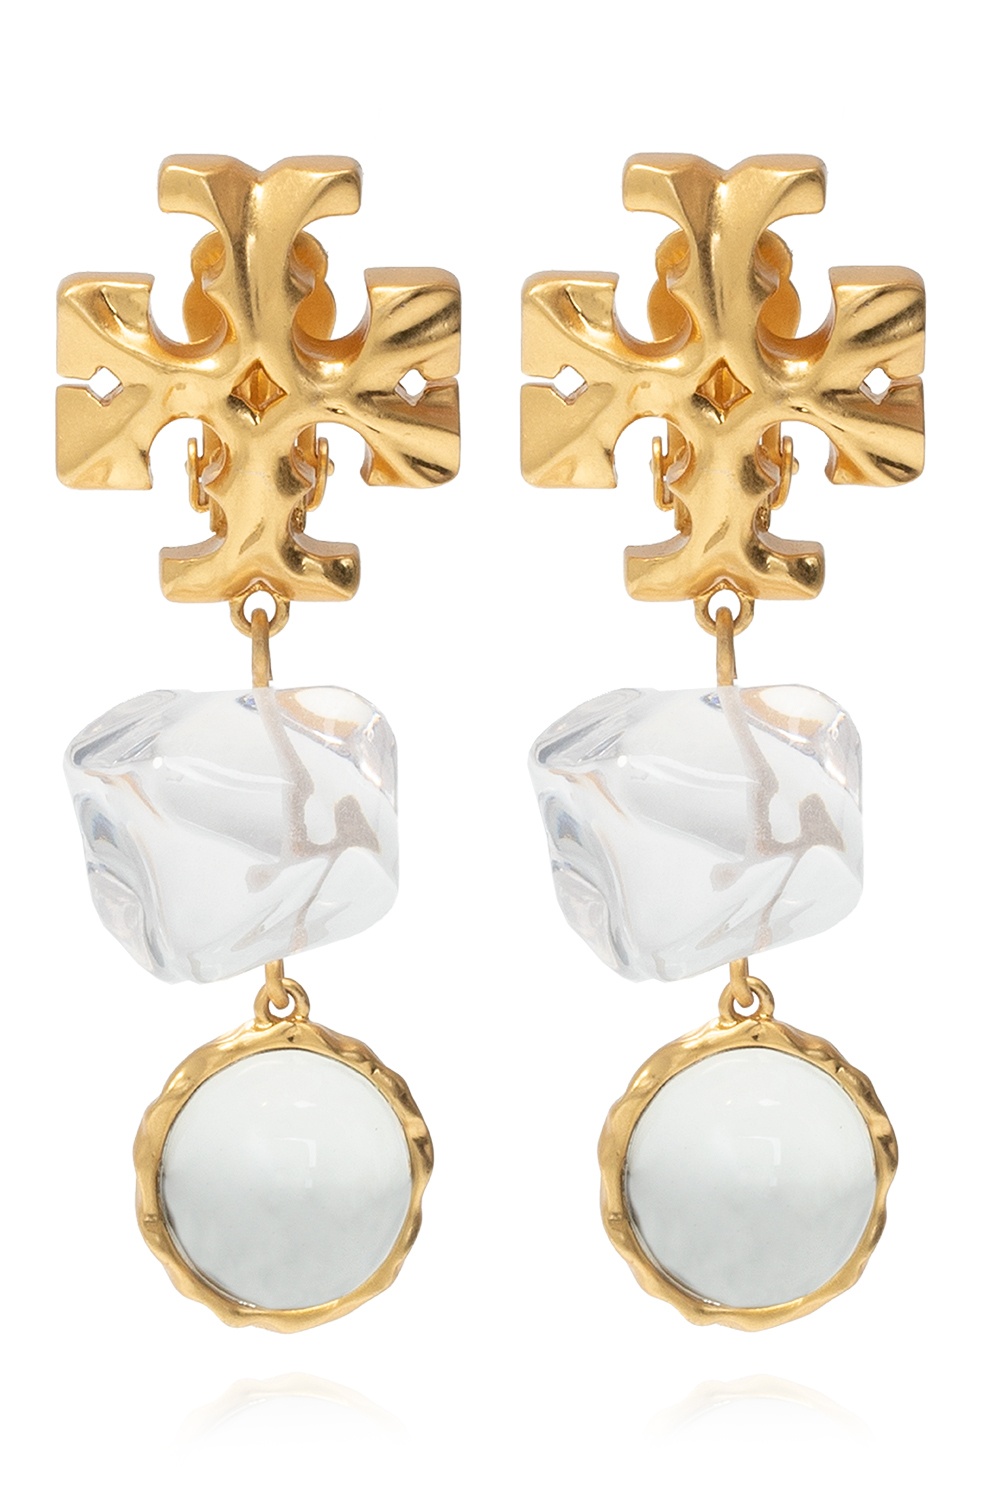 Tory Burch Clip-on earrings | Women's Jewelery | IetpShops